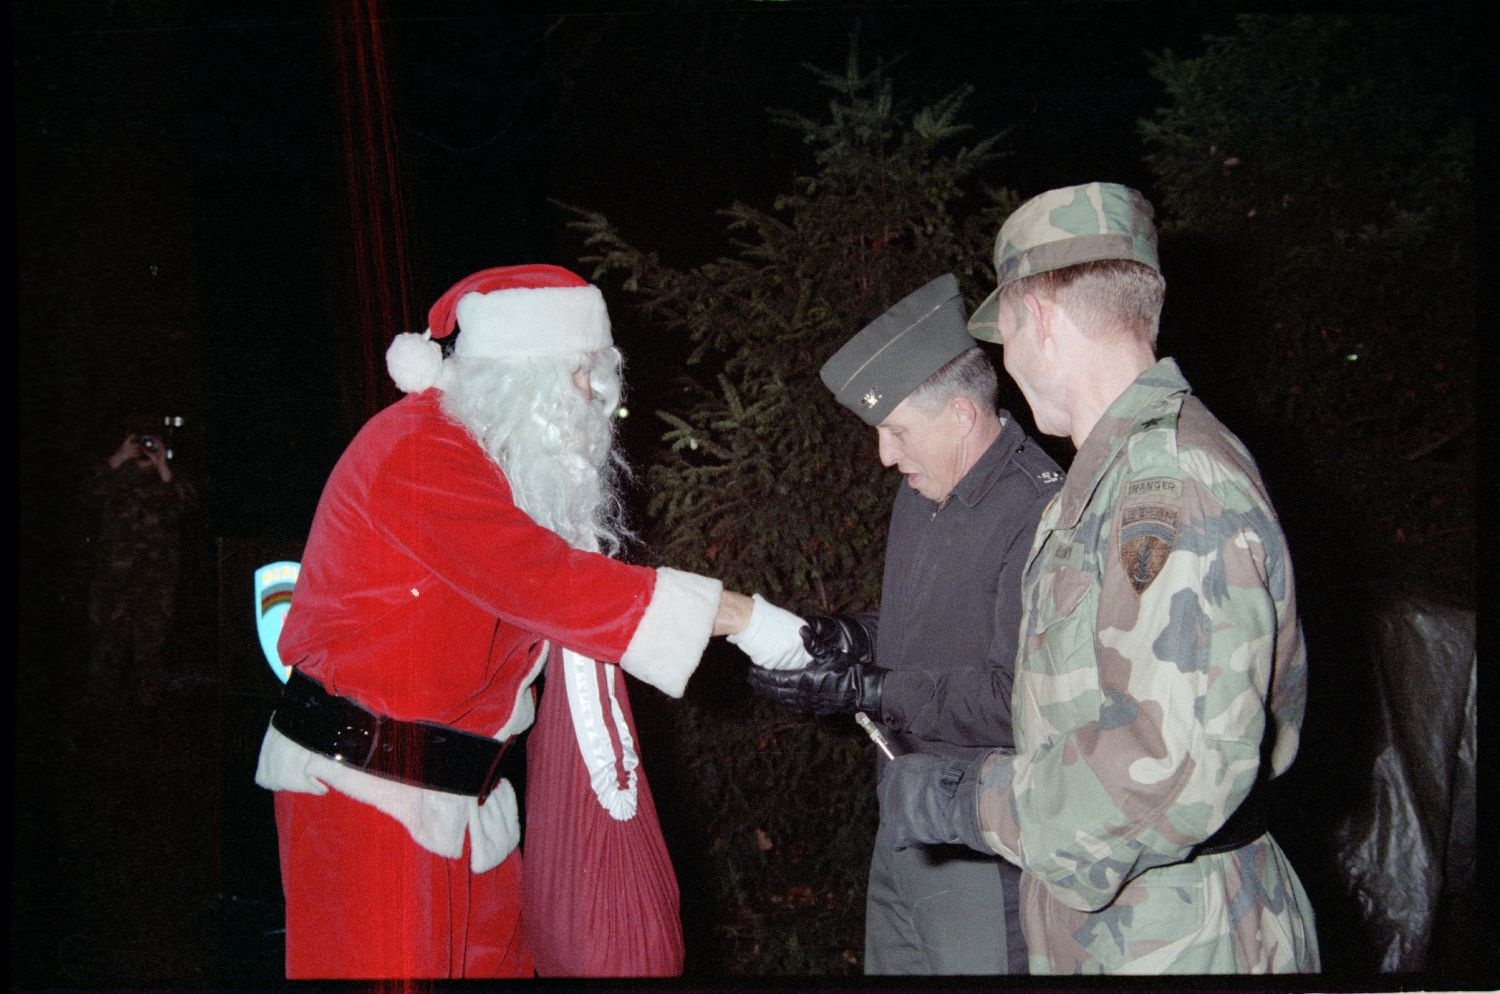 Fotografie: Weihnachtliche Veranstaltung auf der Truman Plaza in Berlin-Dahlem (AlliiertenMuseum/U.S. Army Photograph Public Domain Mark)